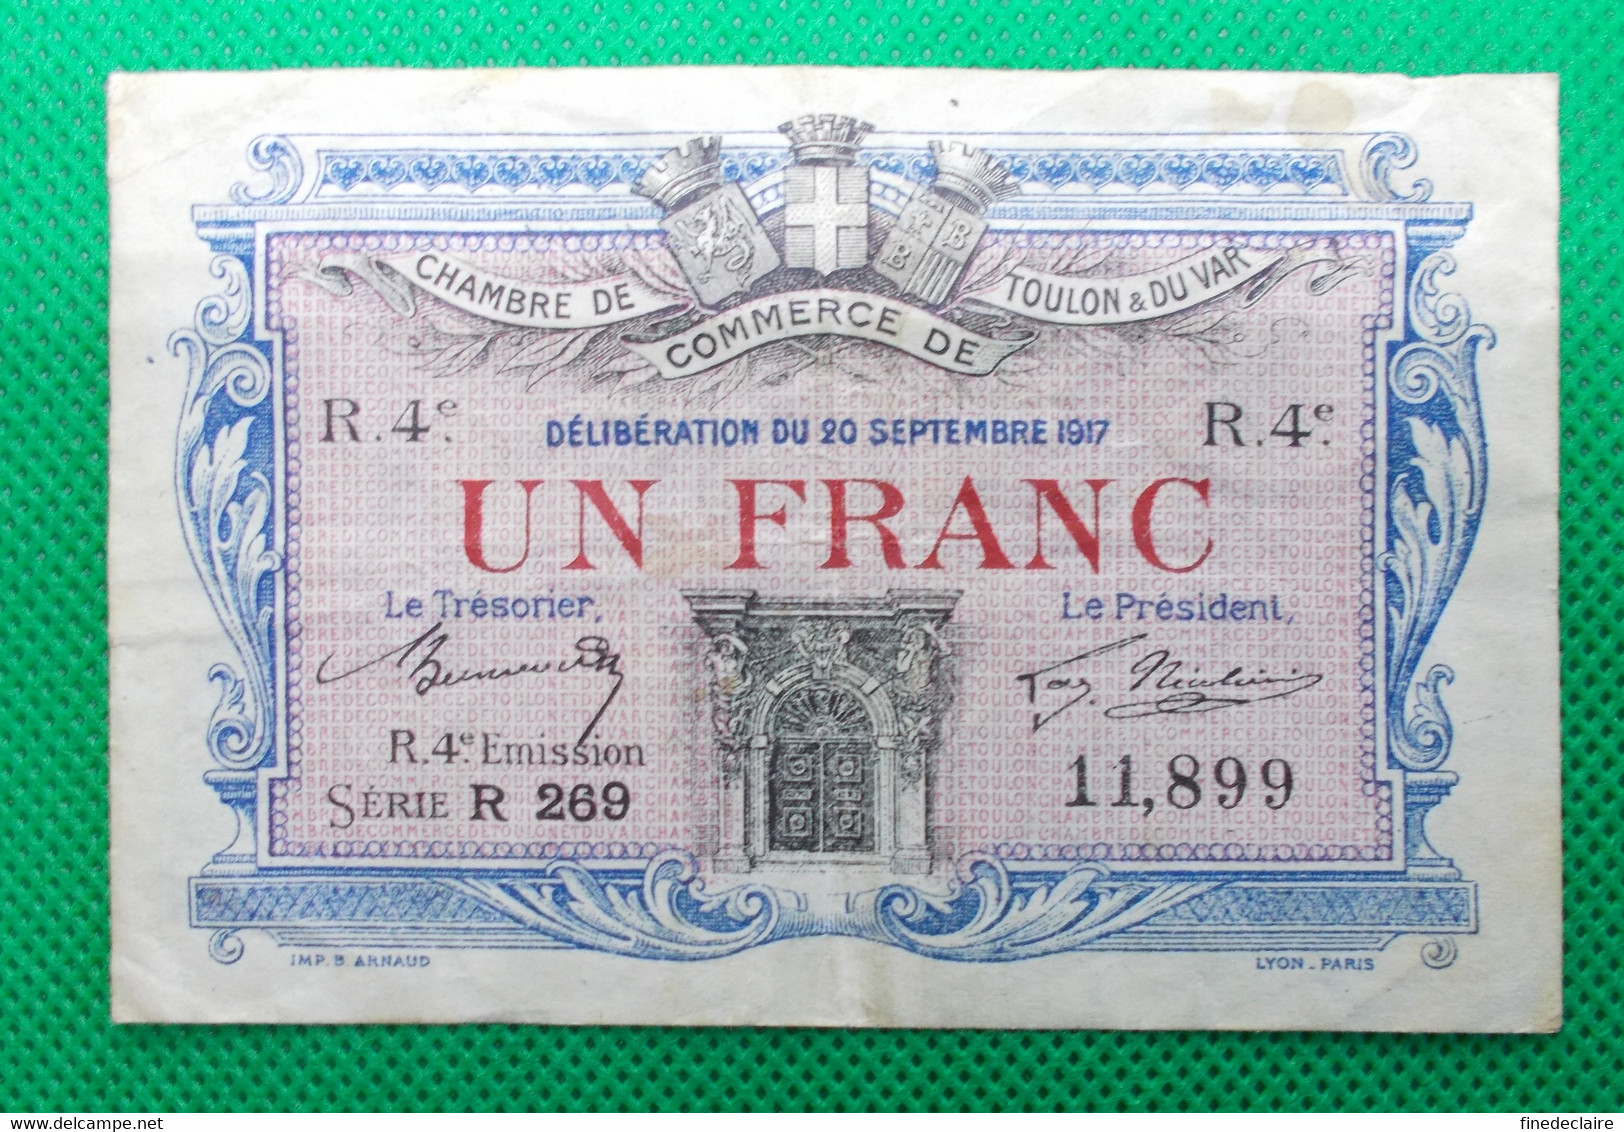 Billet Chambre De Commerce De Toulon  Var - Un Franc  R. 4° émission  Série: R 269 Sans Filigrane - 20 Septembrre 1917 - Chambre De Commerce